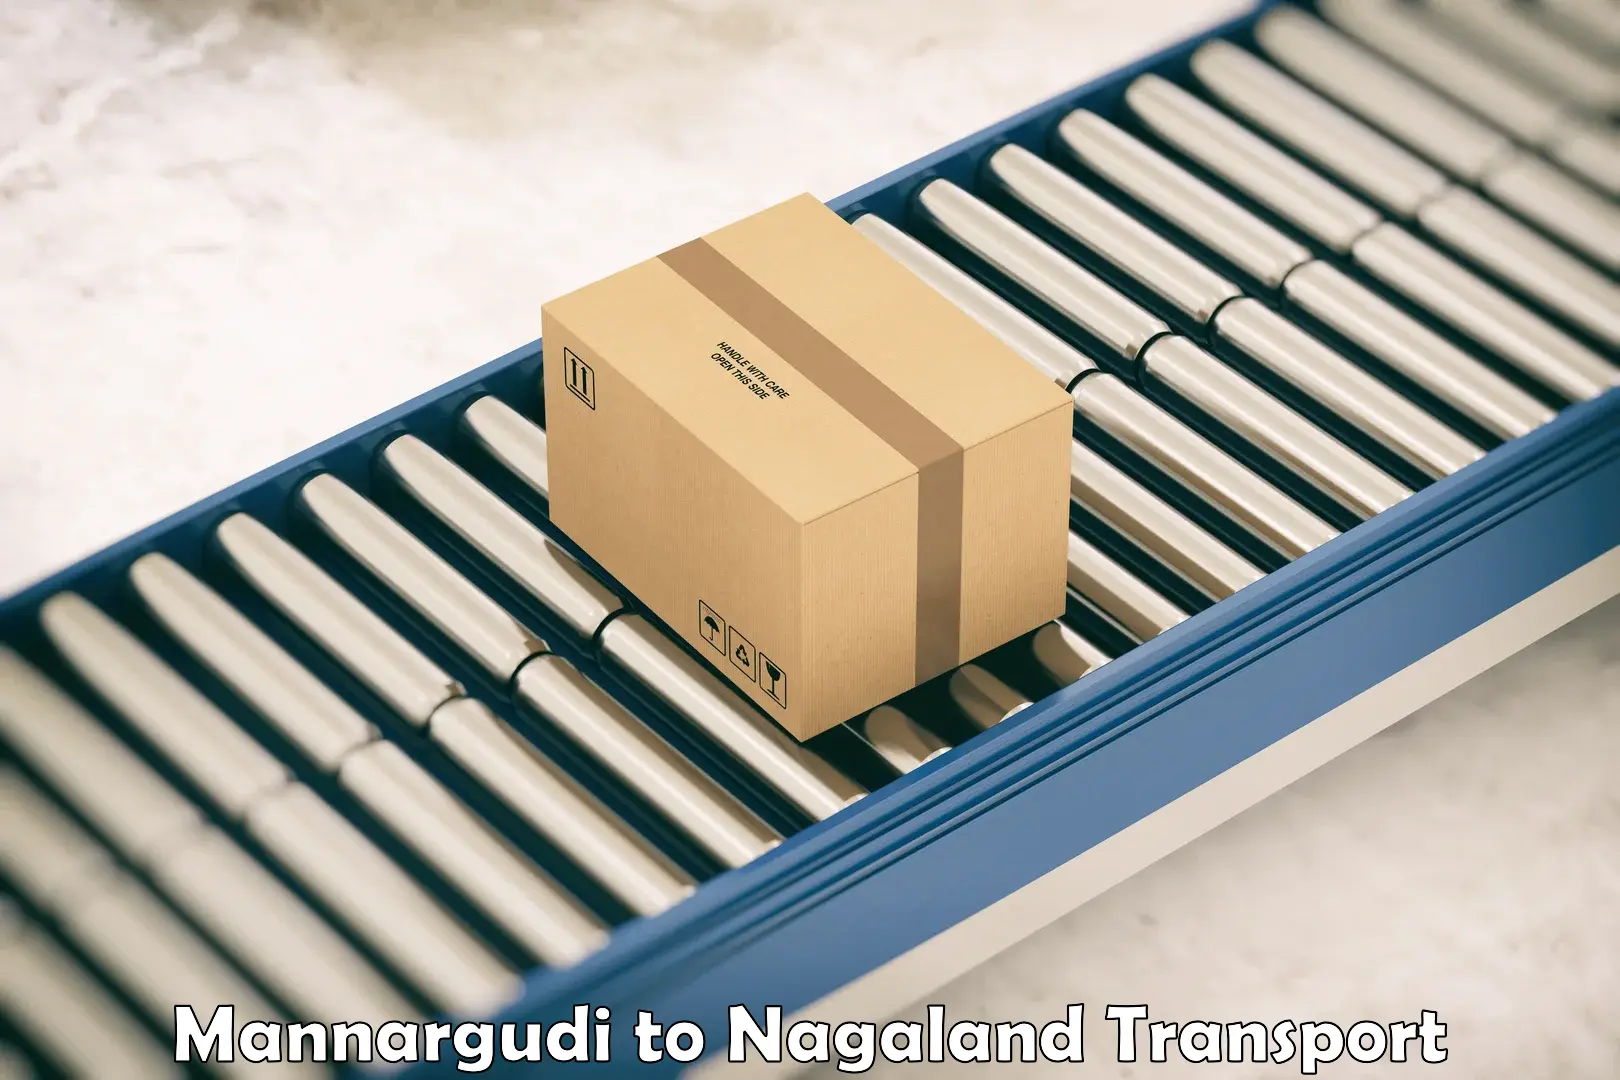 Cargo transport services Mannargudi to Nagaland